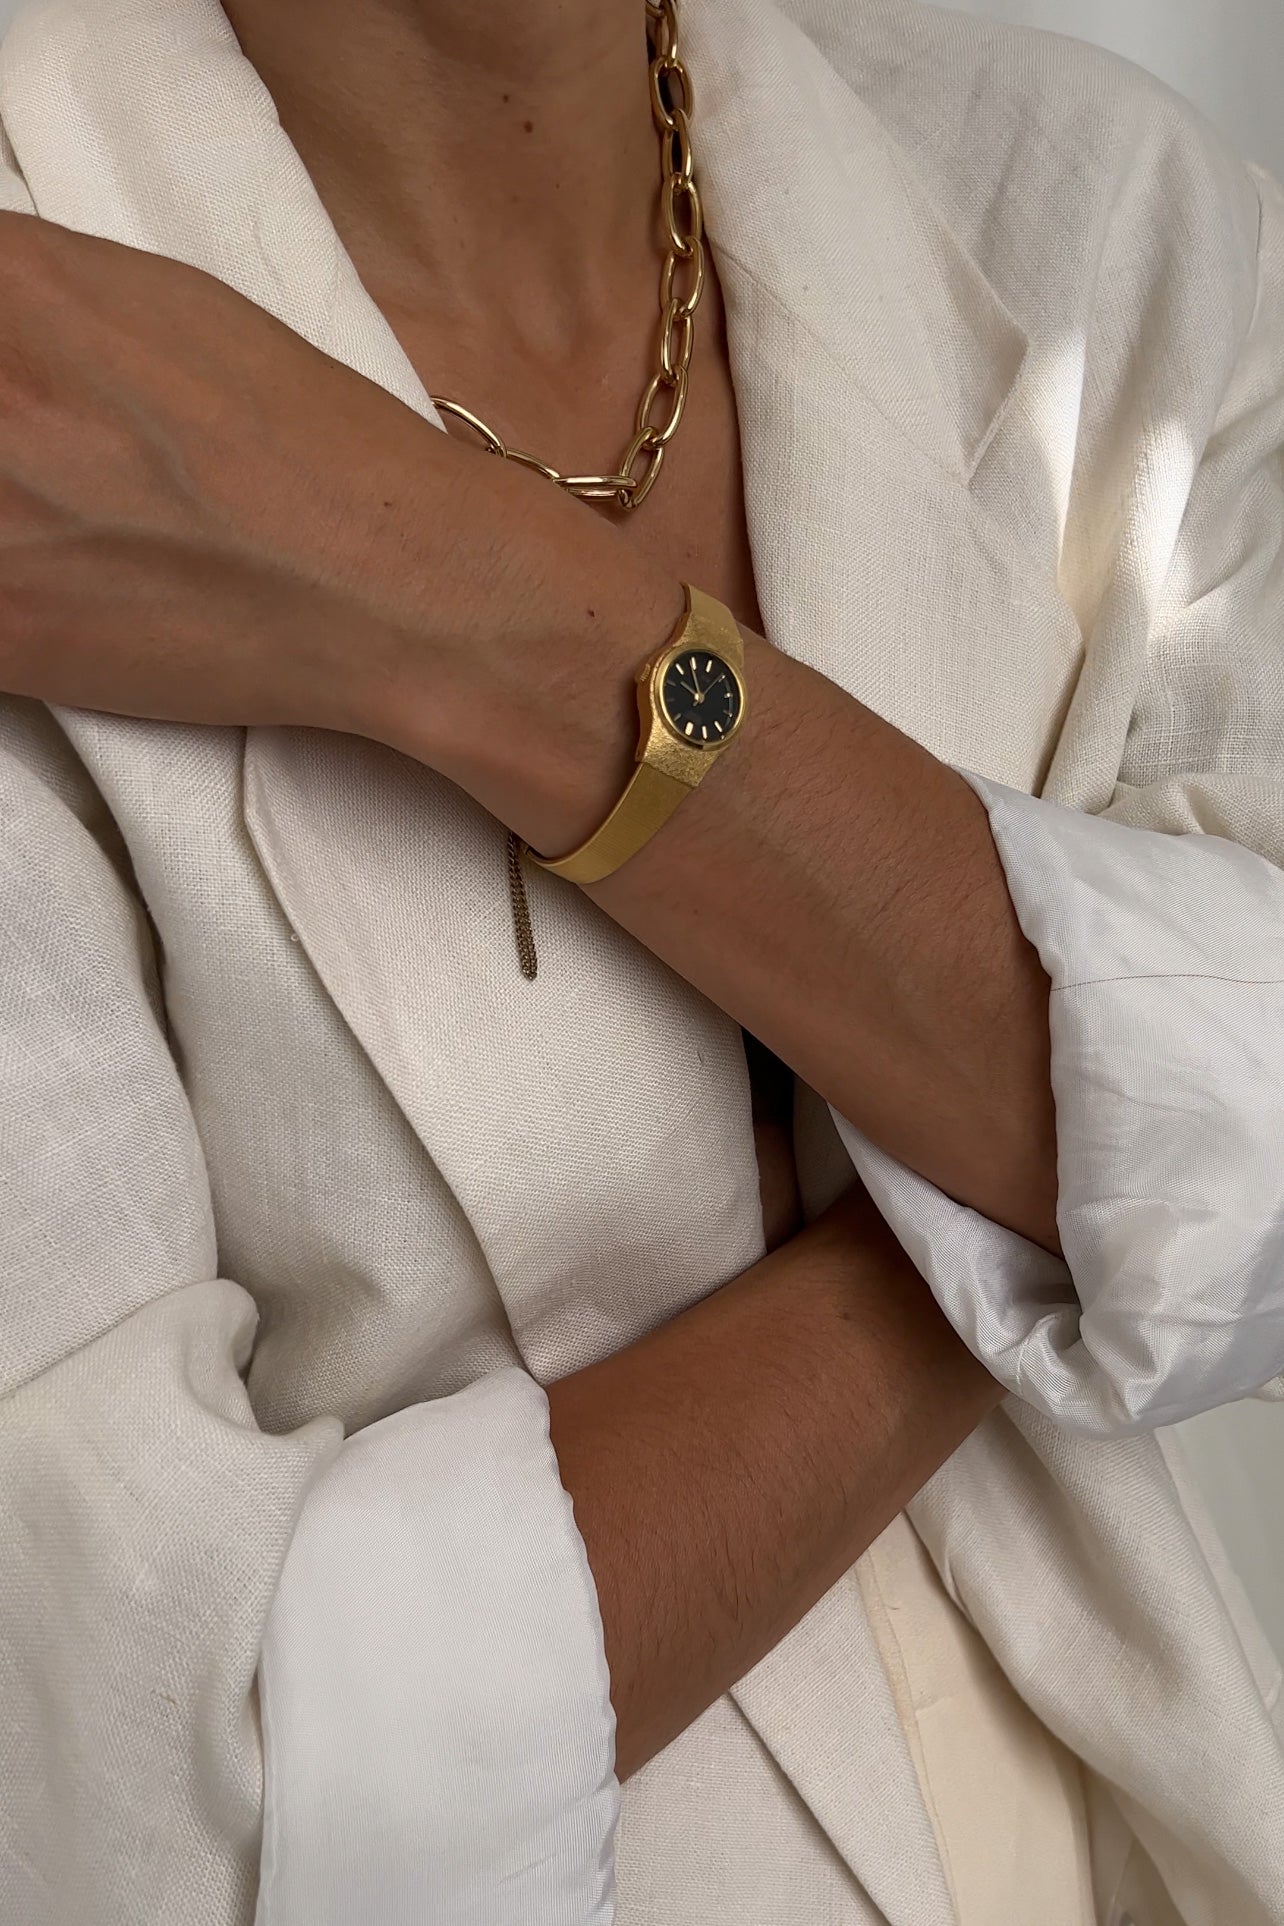 Vintage Gold Tone Seiko Quartz Watch